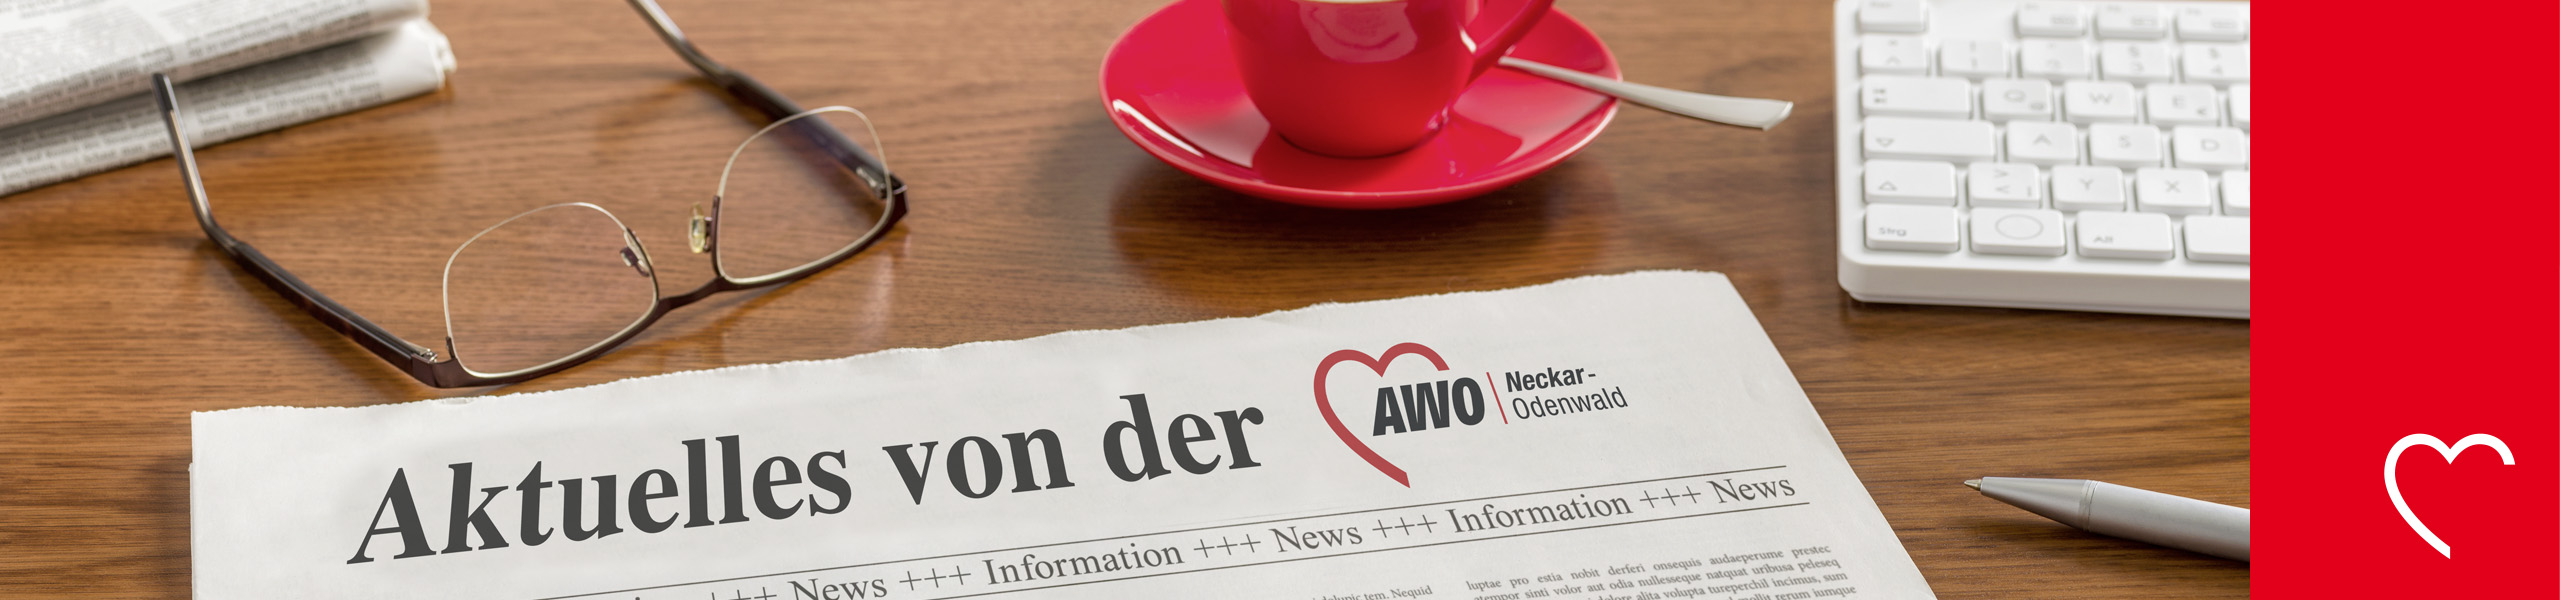 AWO Neckar-Odenwald gGmbH - „Die Letzte macht das Licht aus“: AWO warnt vor dramatischen Folgen der geplanten Haushaltskürzungen 